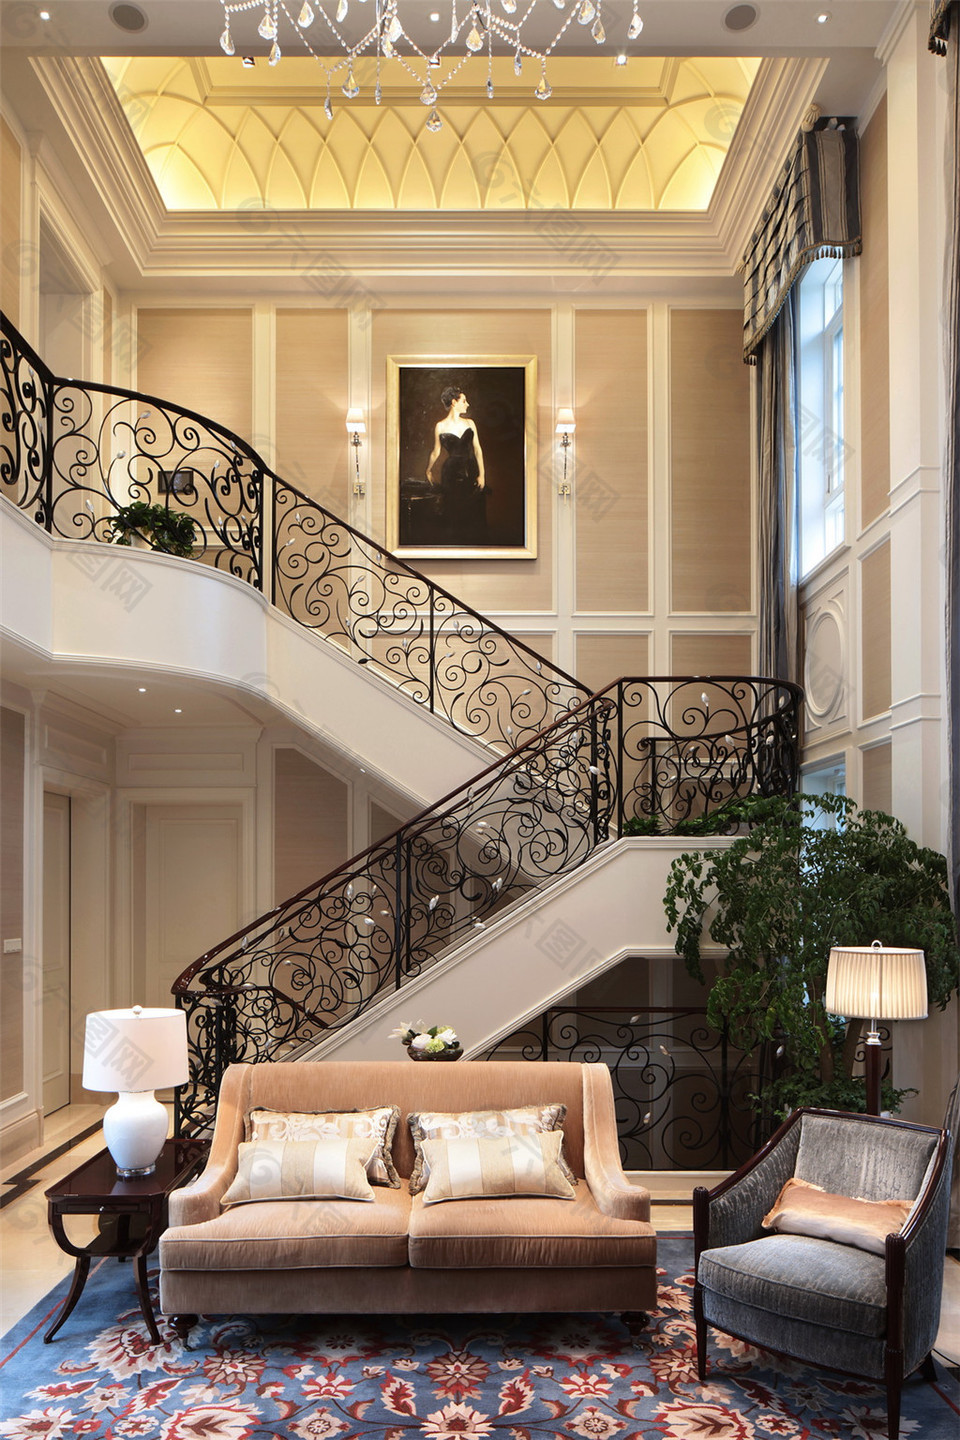 美式豪华客厅楼梯背景墙设计图